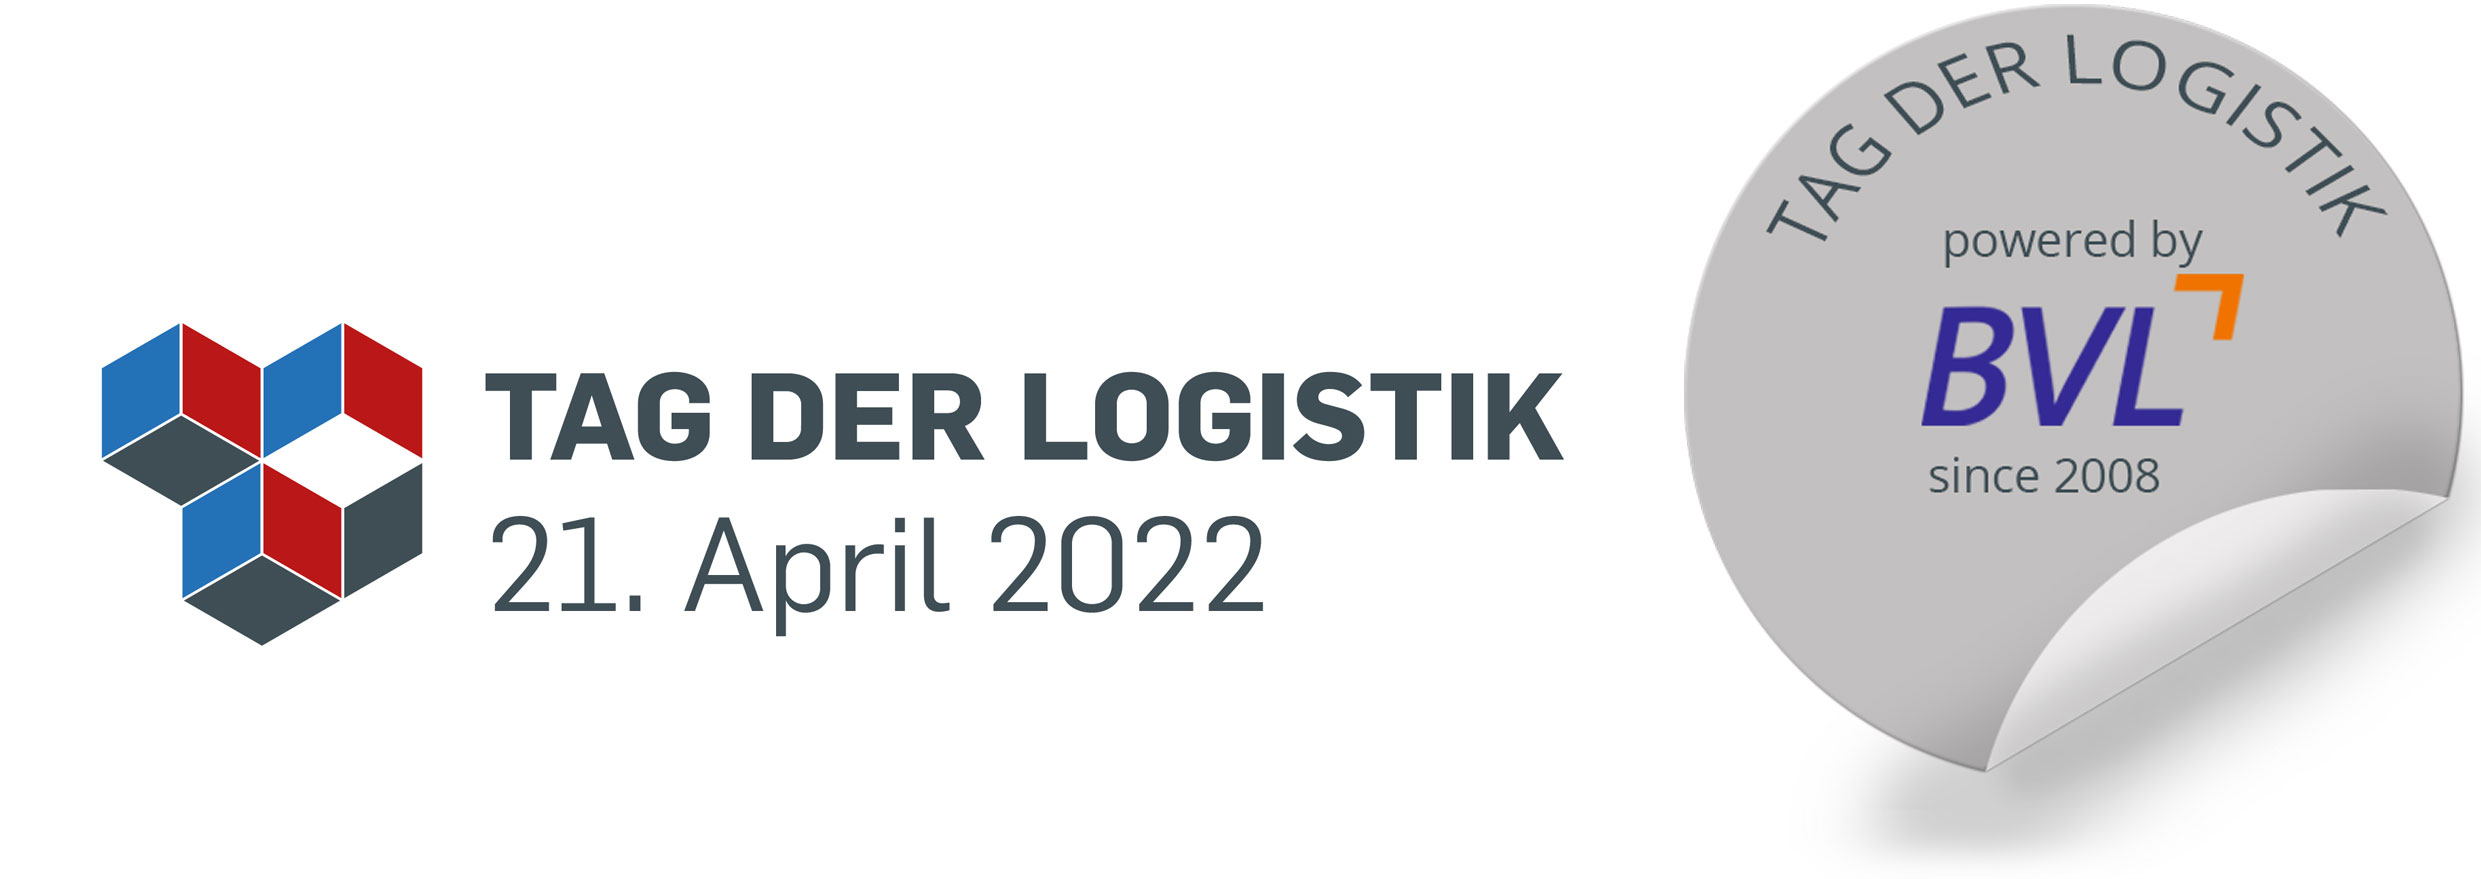 Tag der Logistik 2019